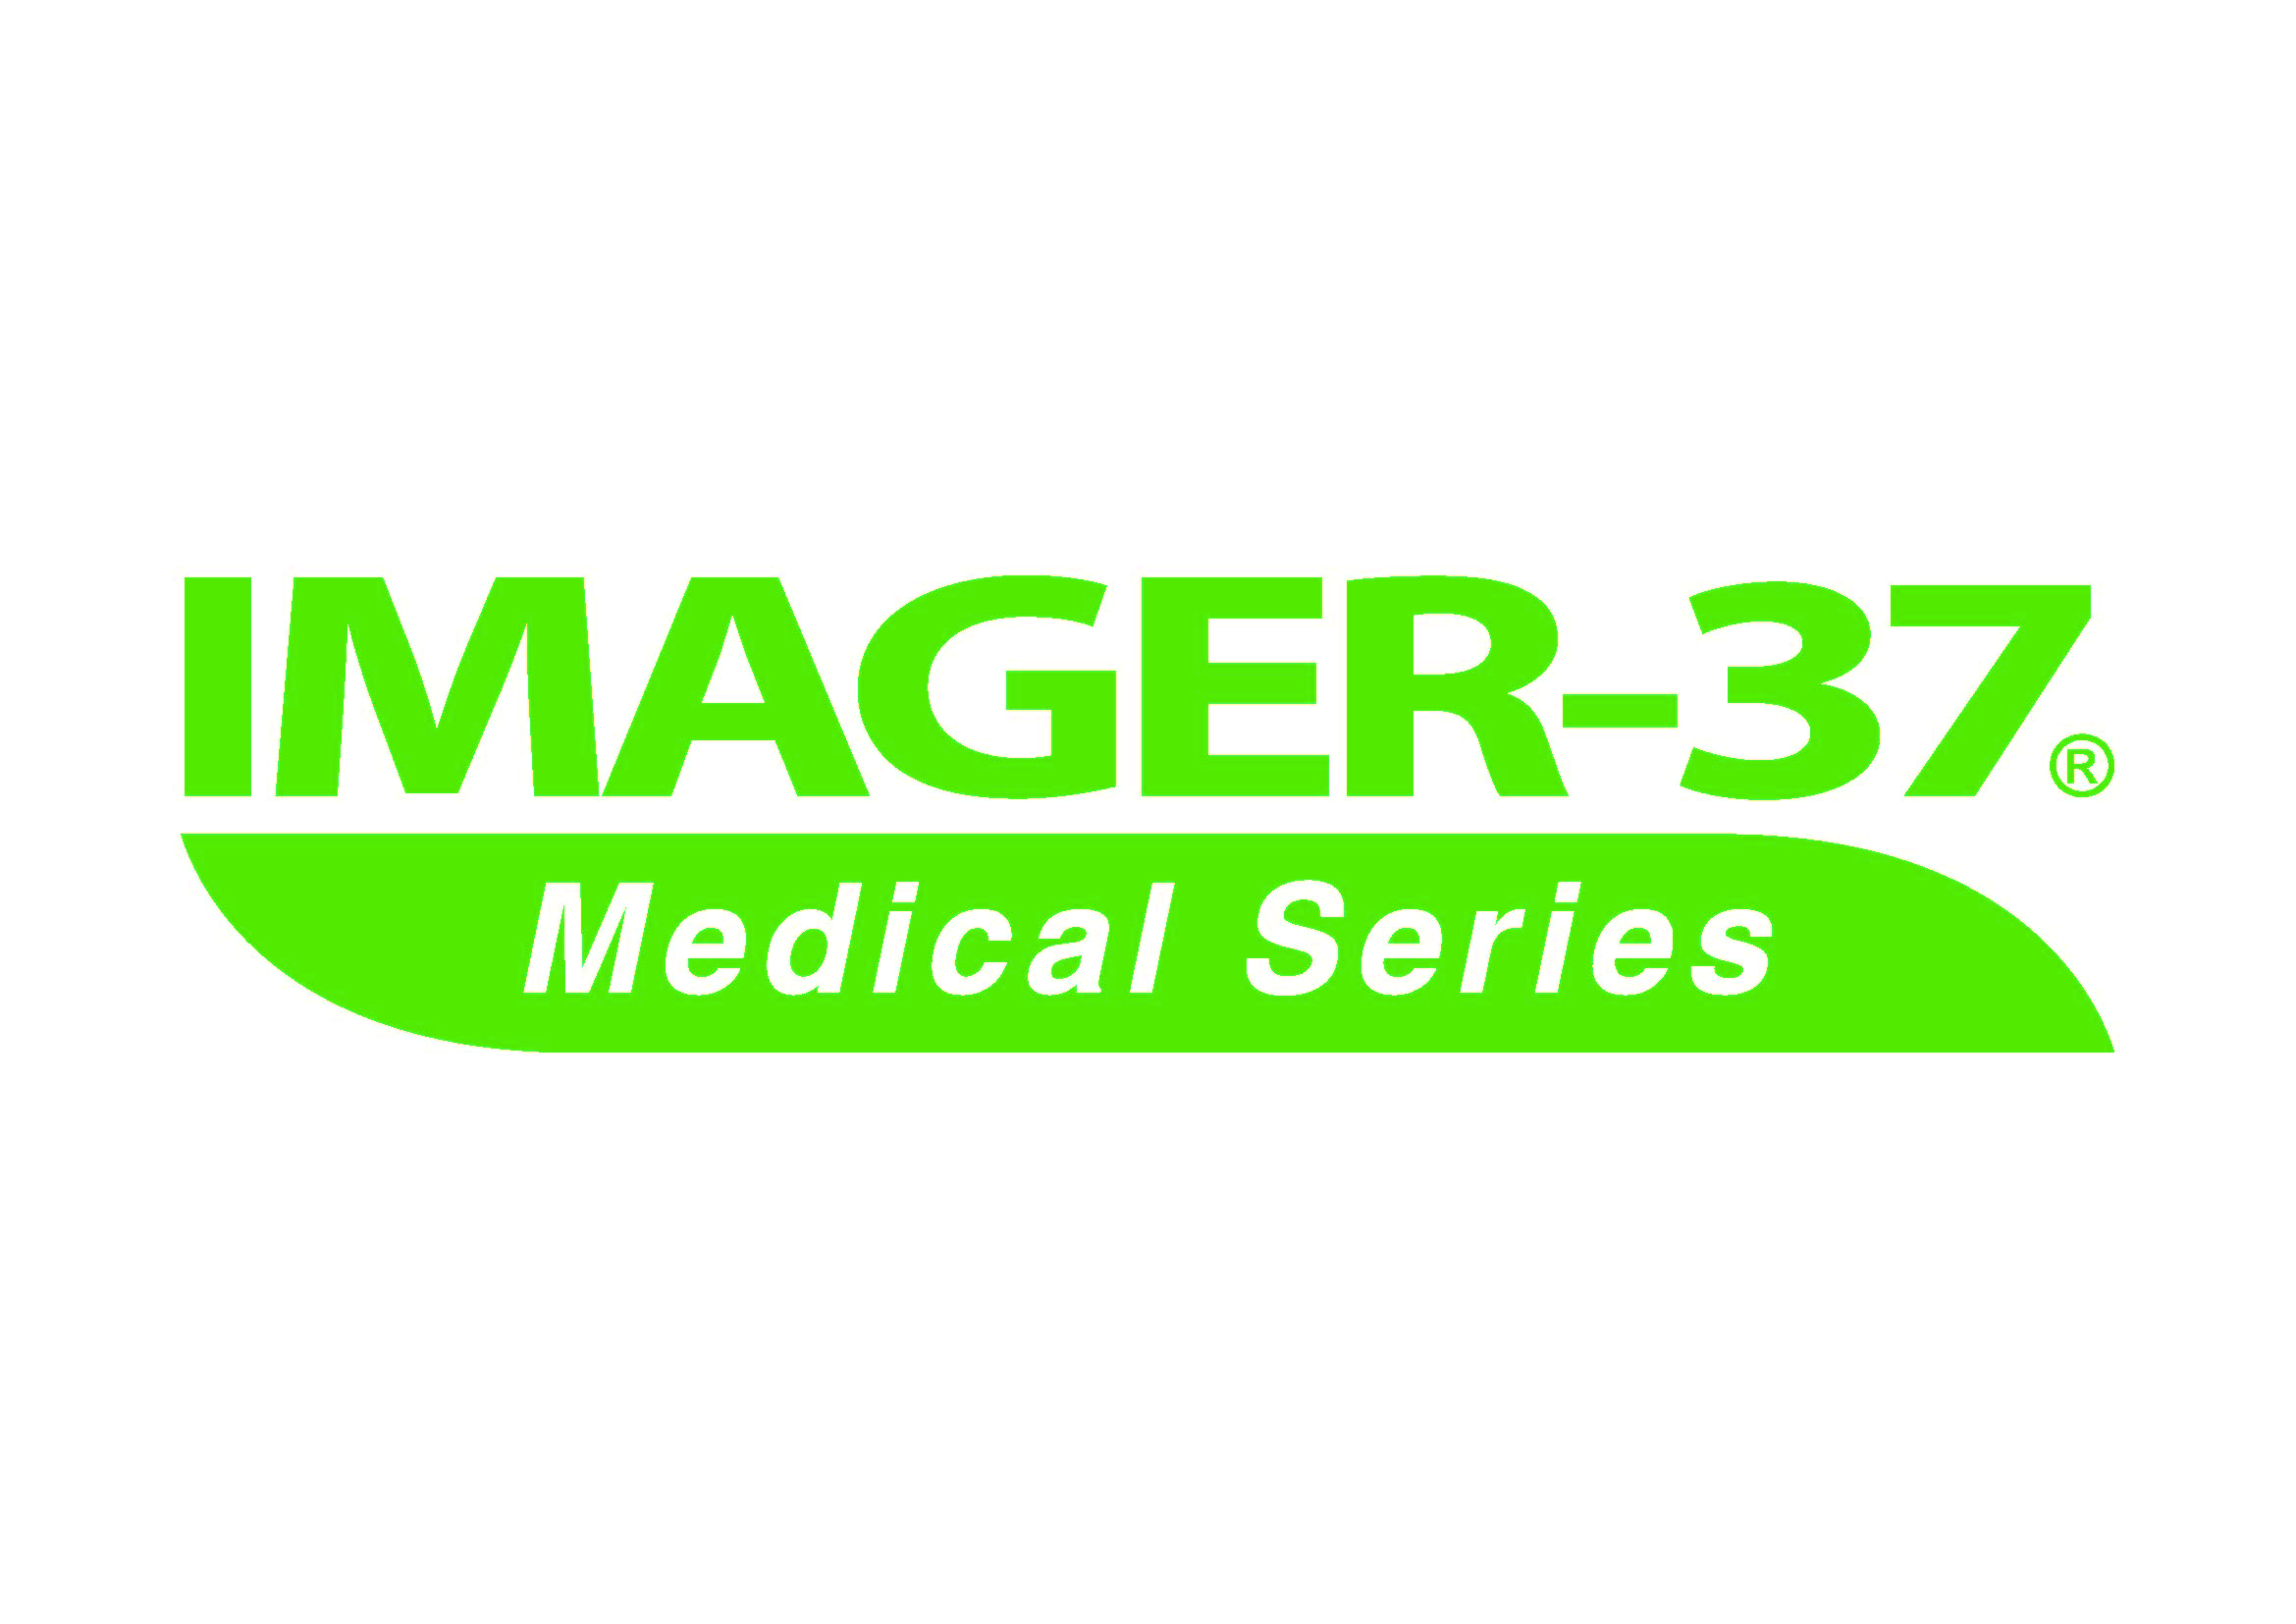 附件七.IMAGER-37 Medical Series LOGO FINAL.ai.jpg